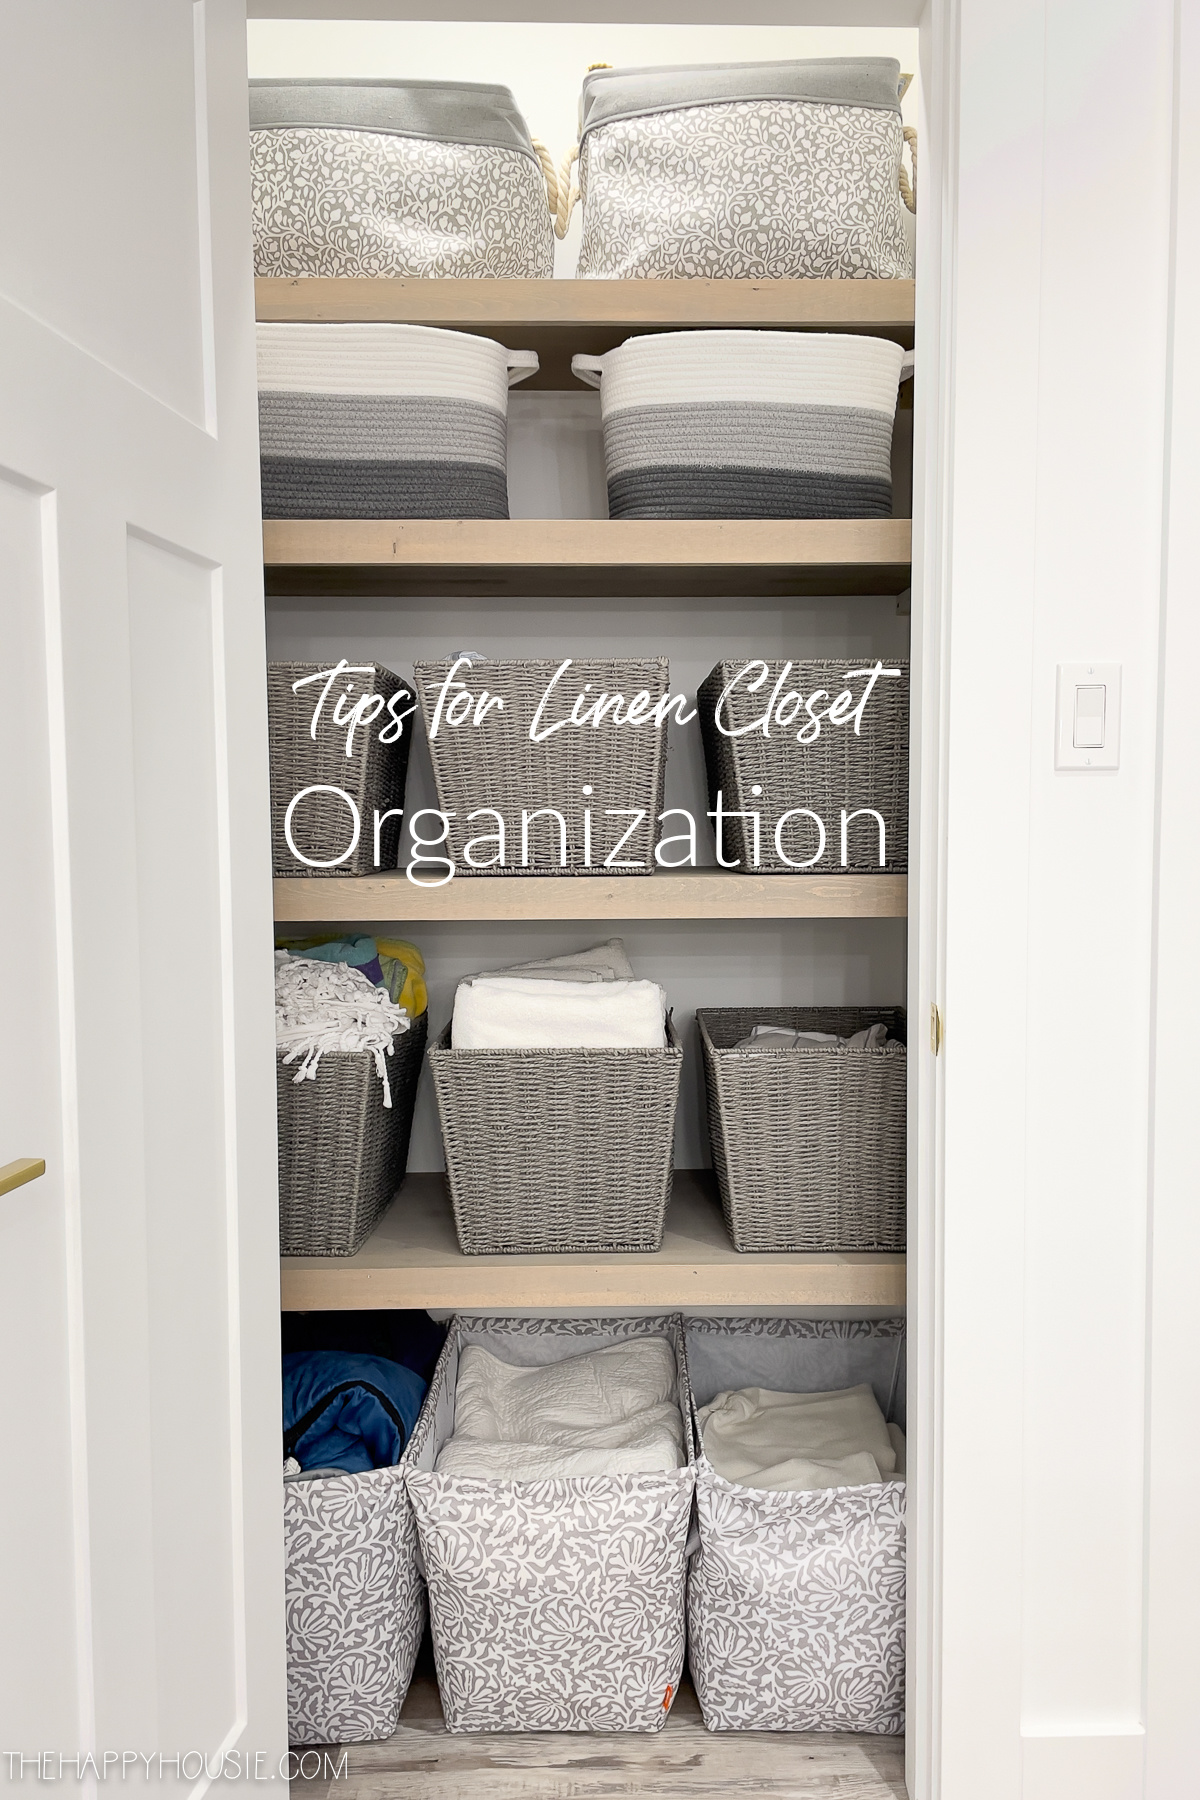 15 Best Linen Closet Organization Ideas - How to Organize a Linen